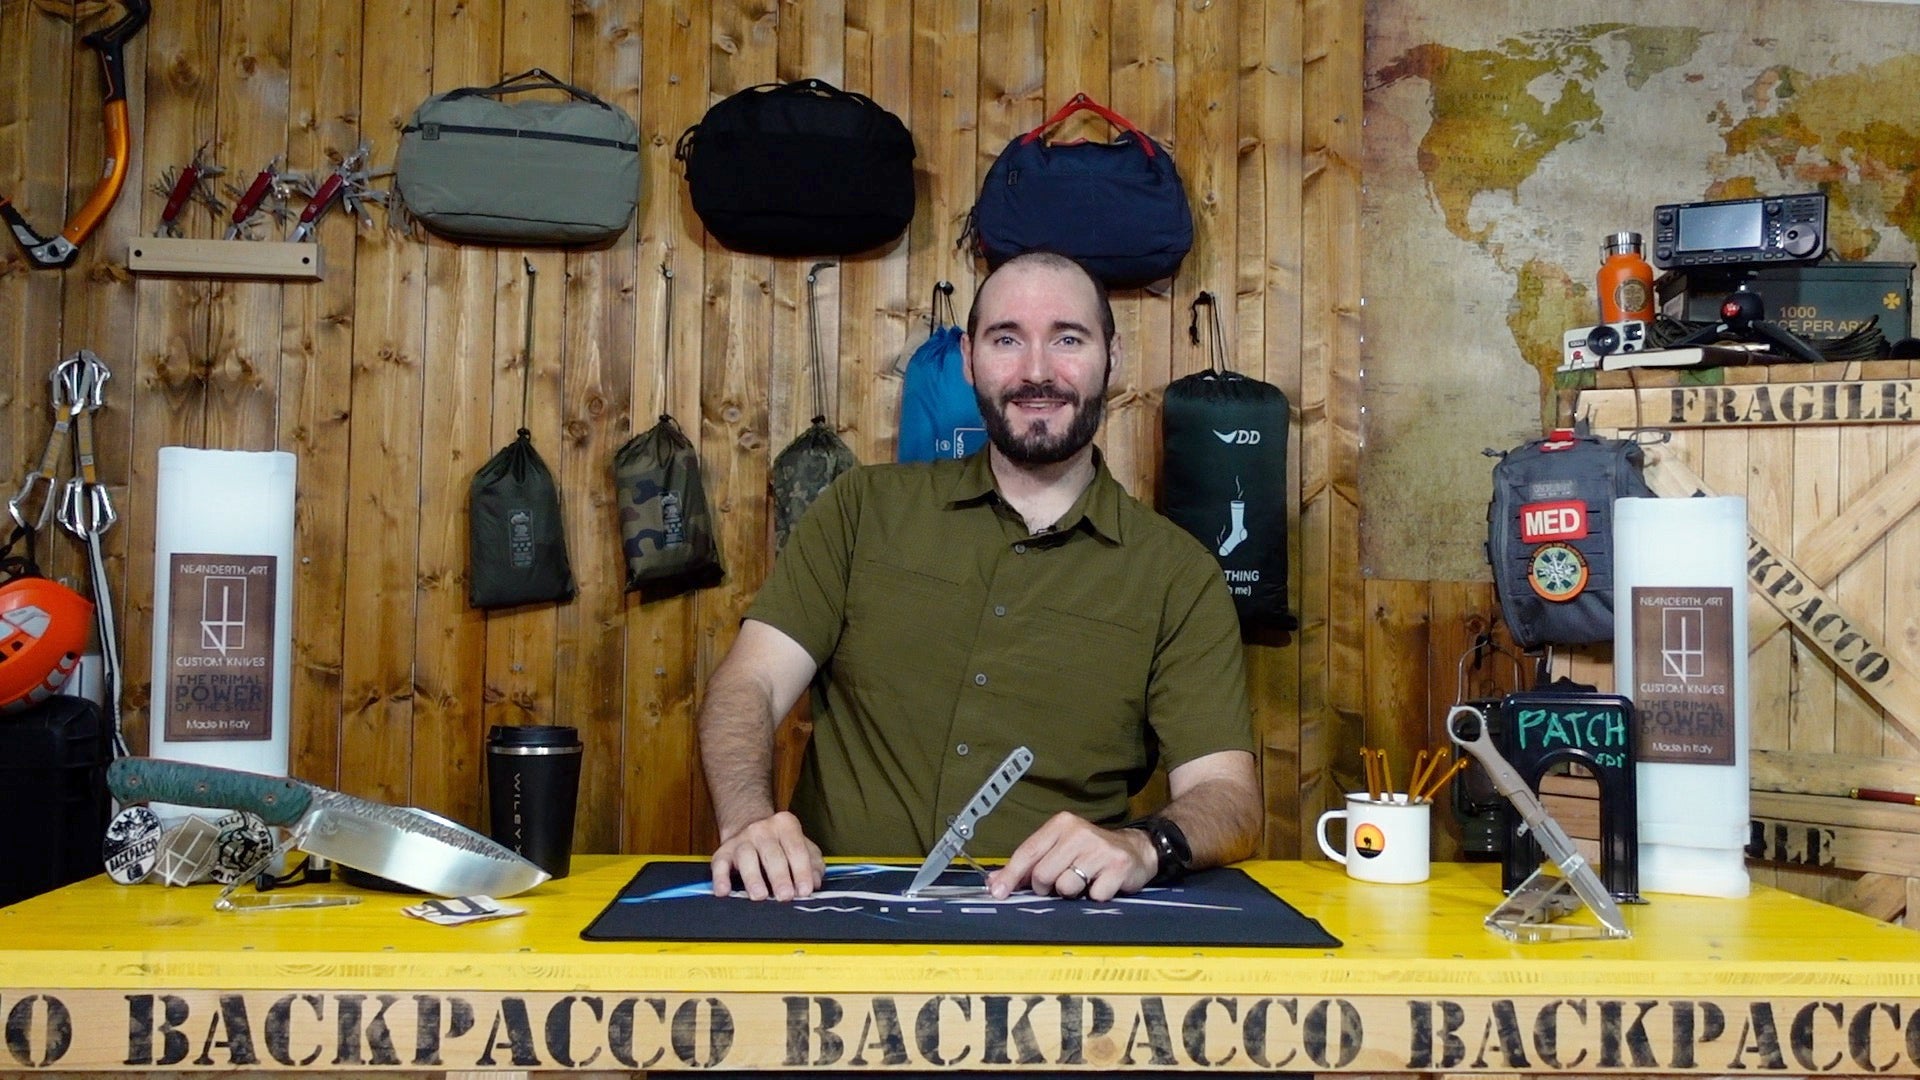 Paolo di Backpacco spiega il BASE 3DP di 5.11